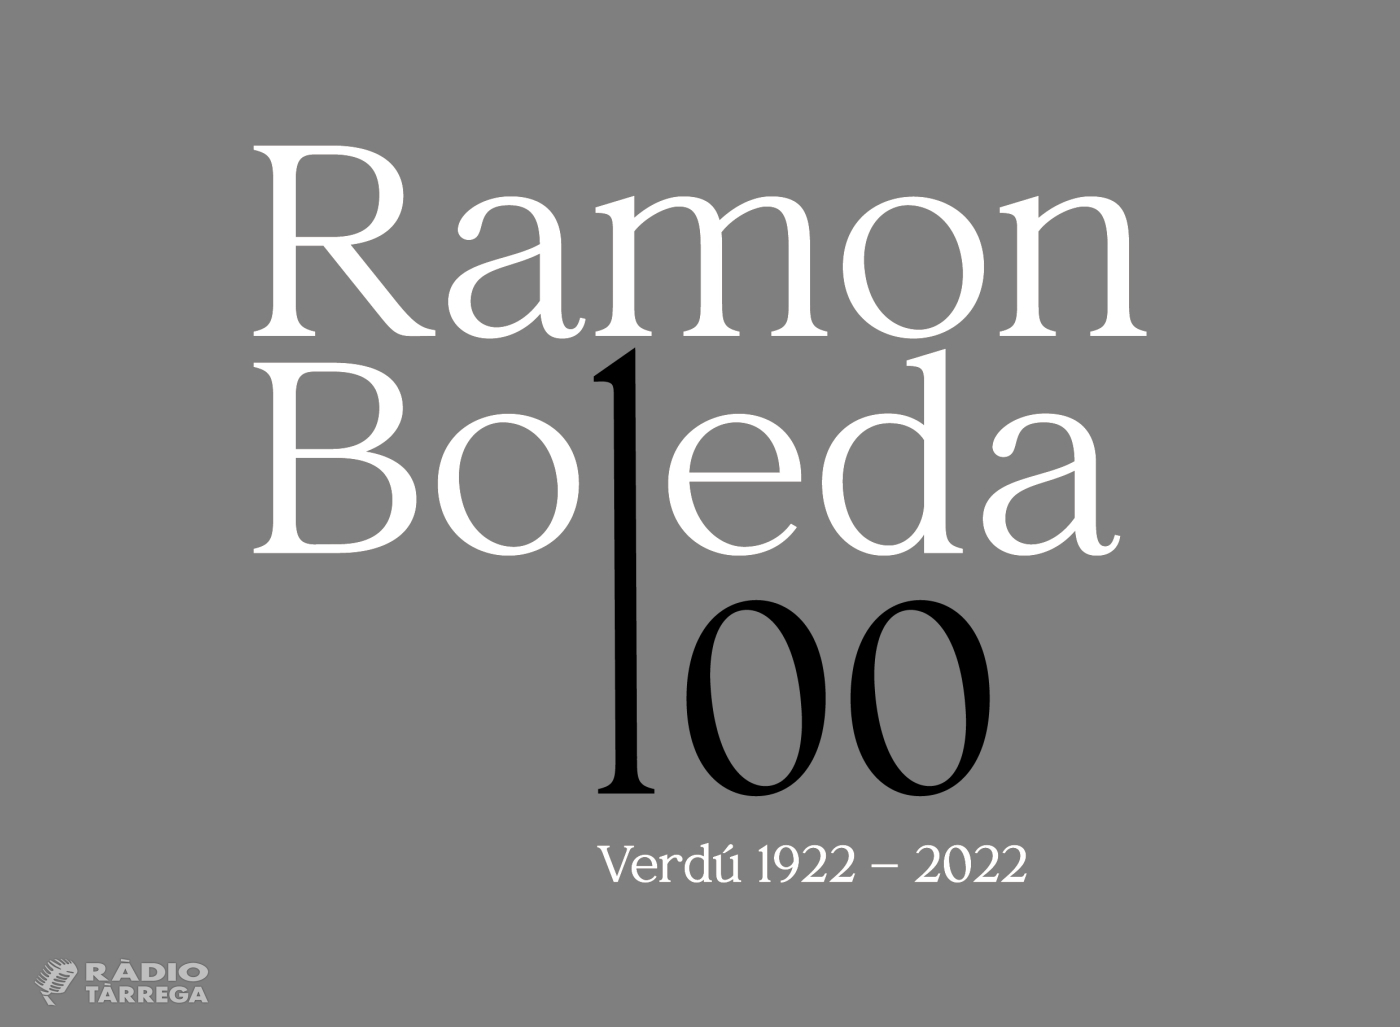 Verdú homenatja a Ramon Boleda en el centenari del seu naixement